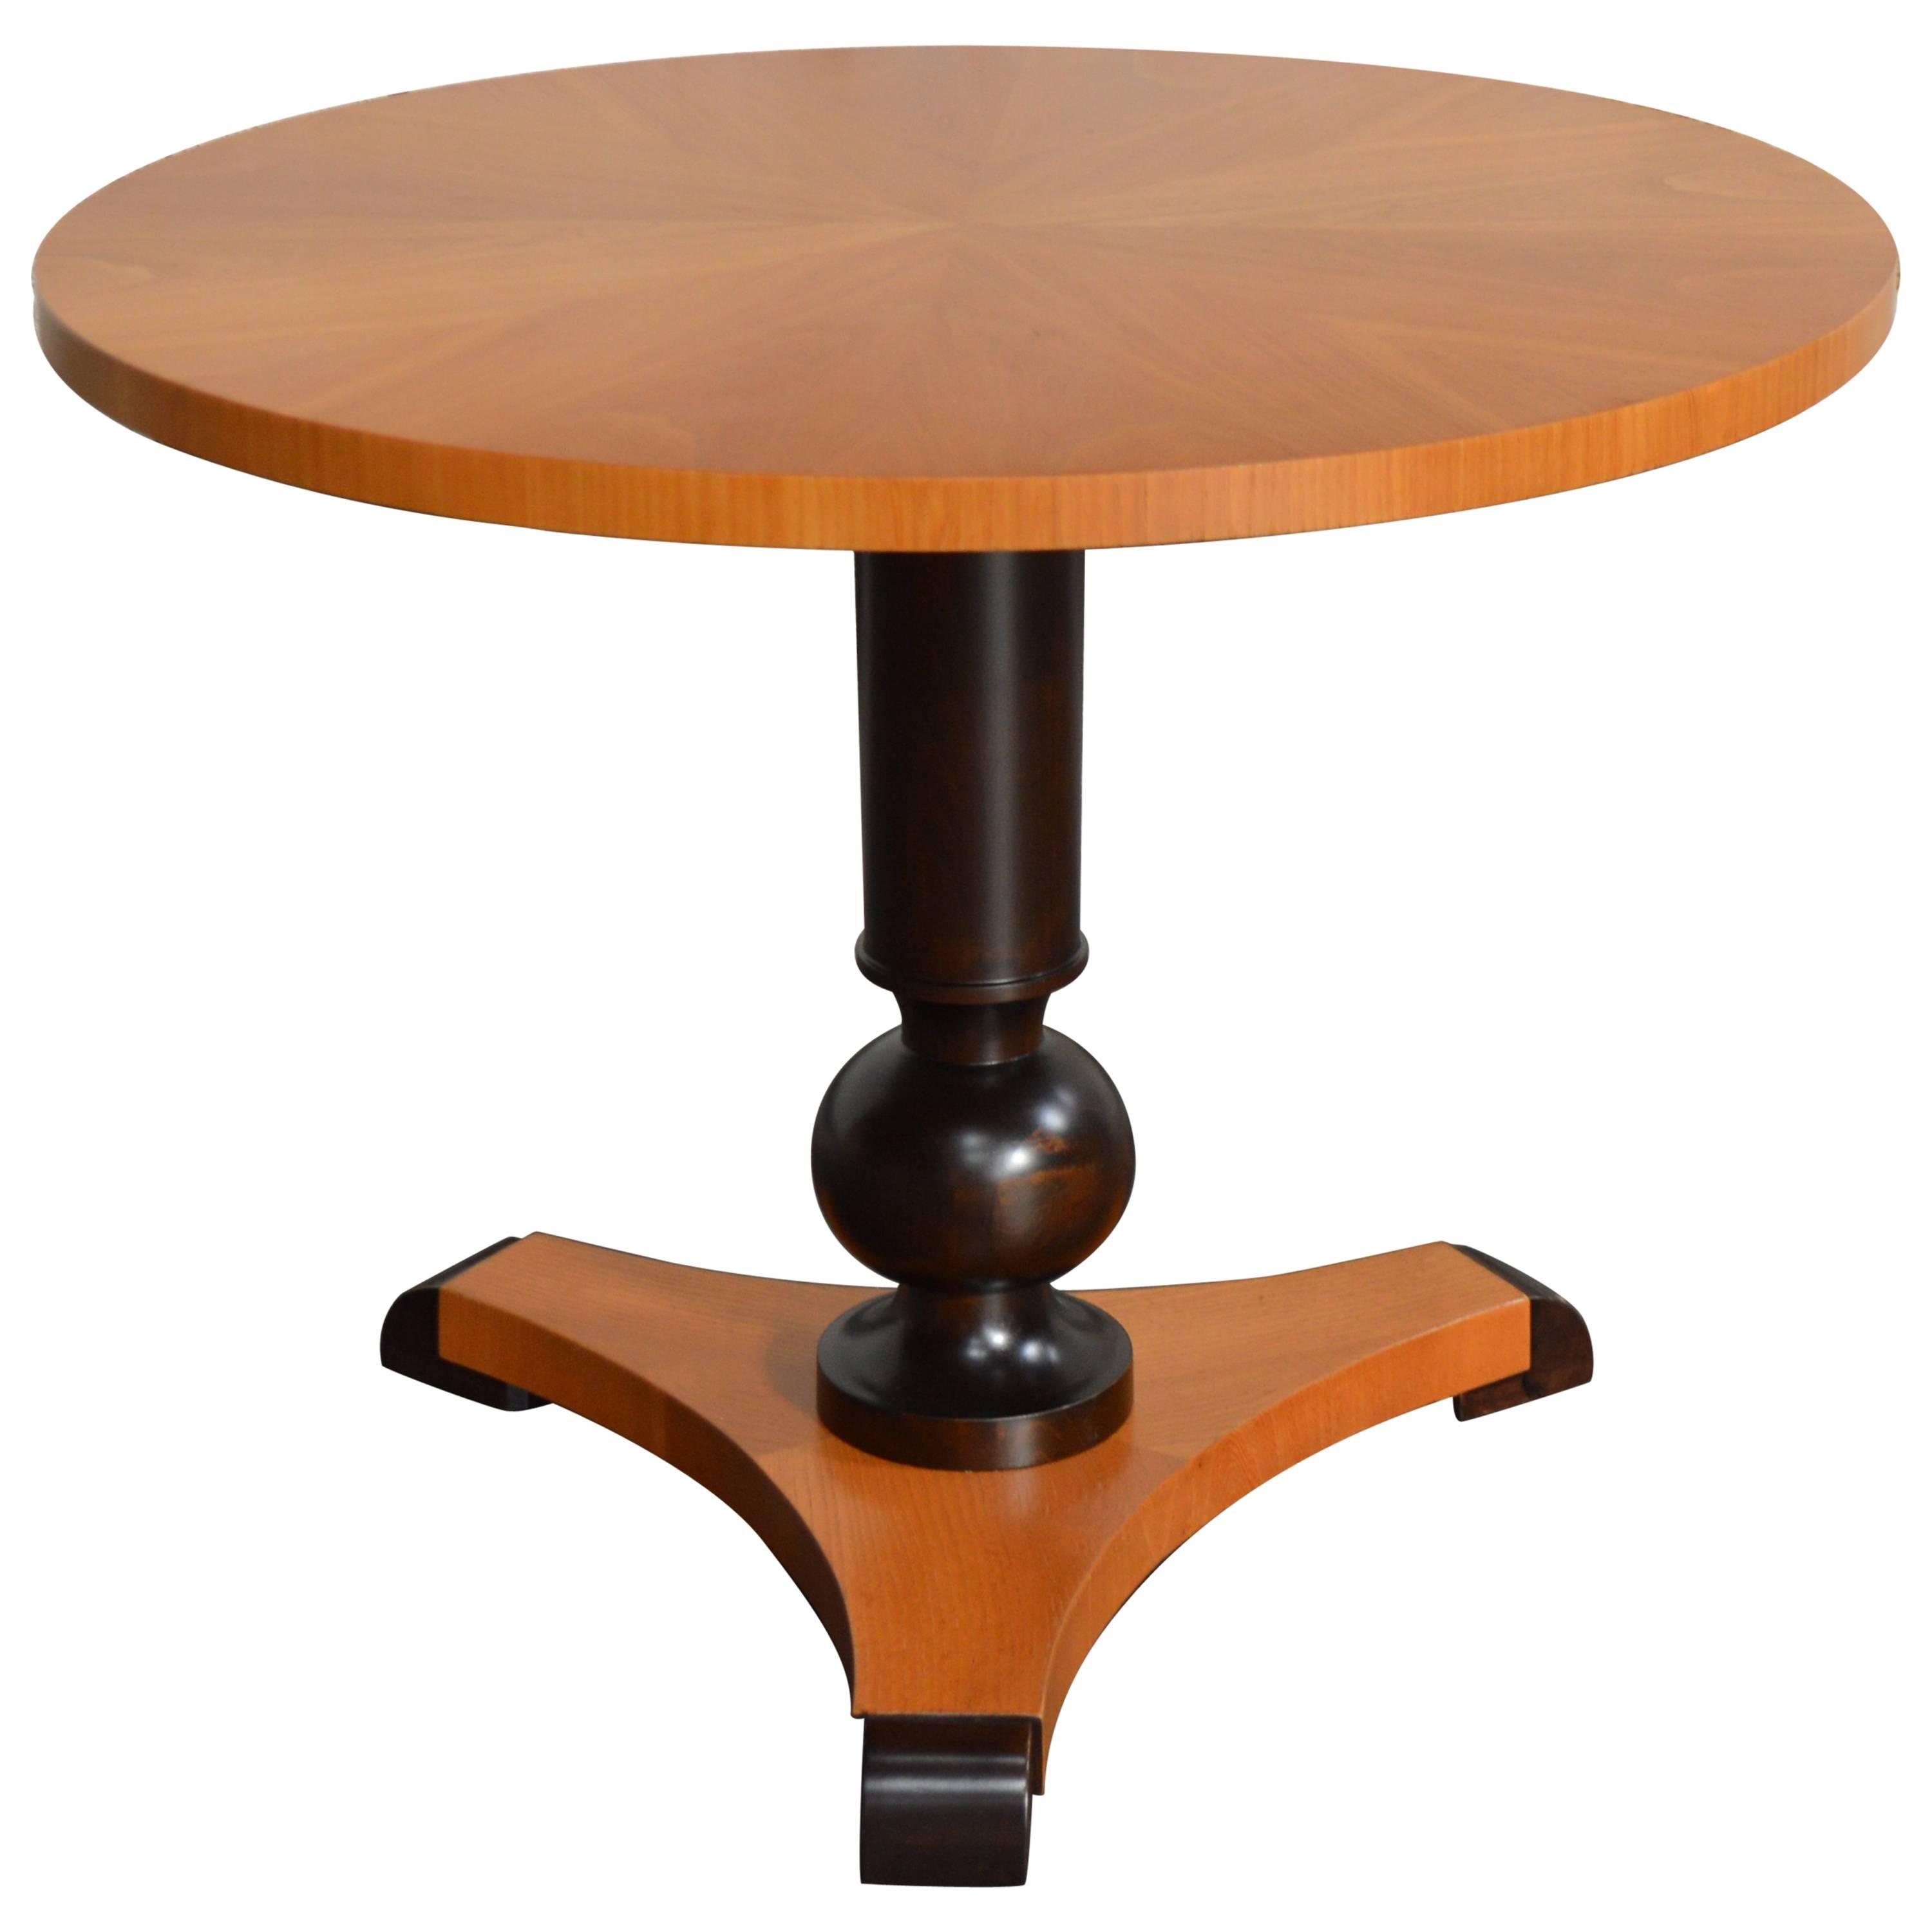 Swedish Art Deco Moderne Round Pedestal End or Side Table